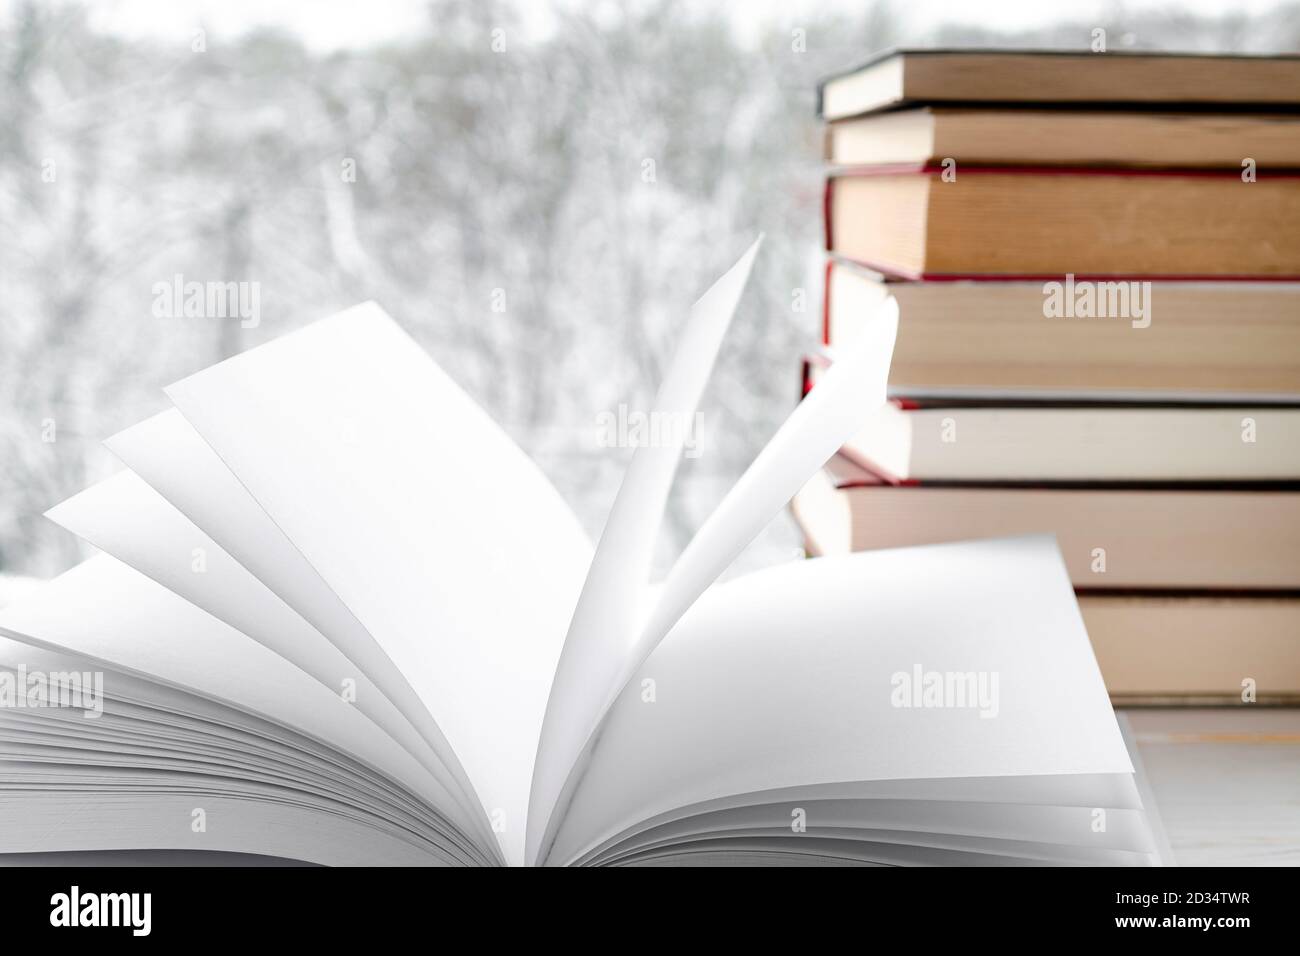 Pagine bianche pulite di un libro aperto sullo sfondo di libri antichi e foresta invernale Foto Stock